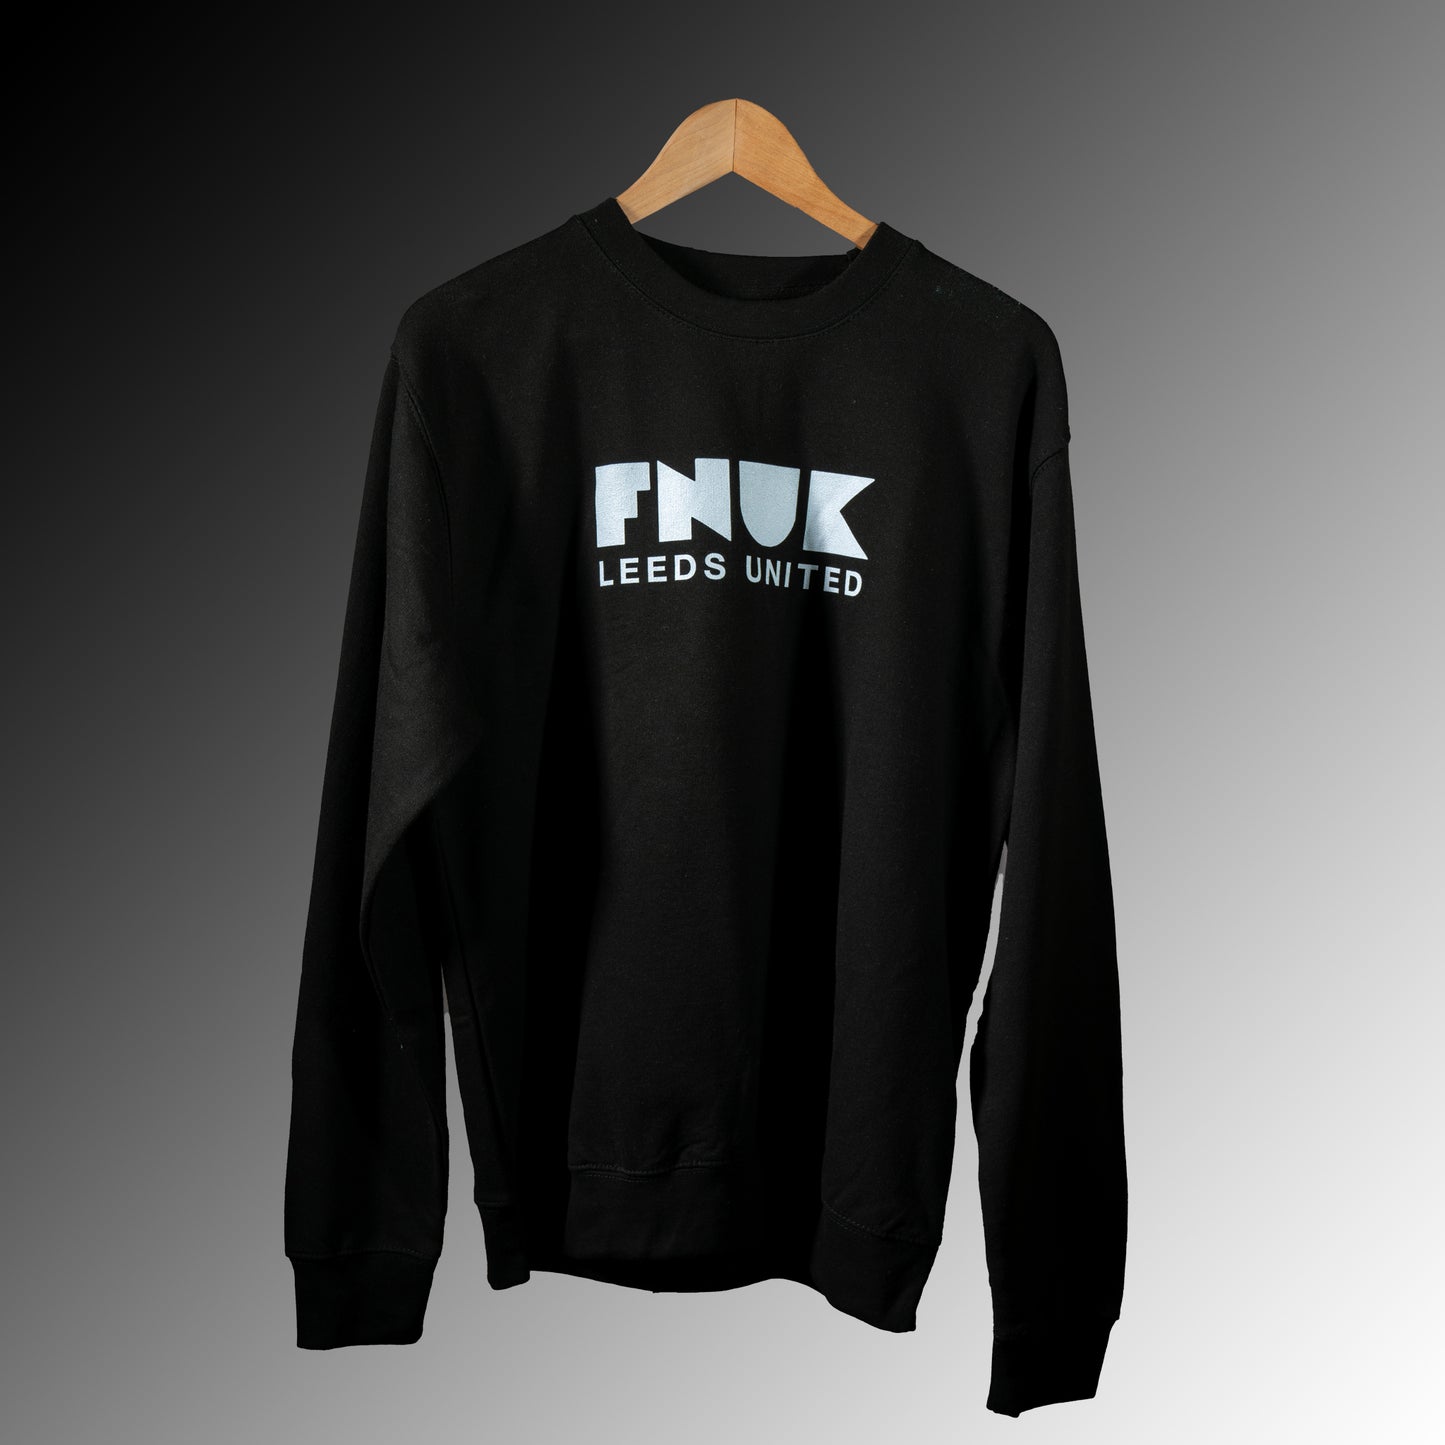 FNUK Logo with Leeds United Jumper for Women in Black & White